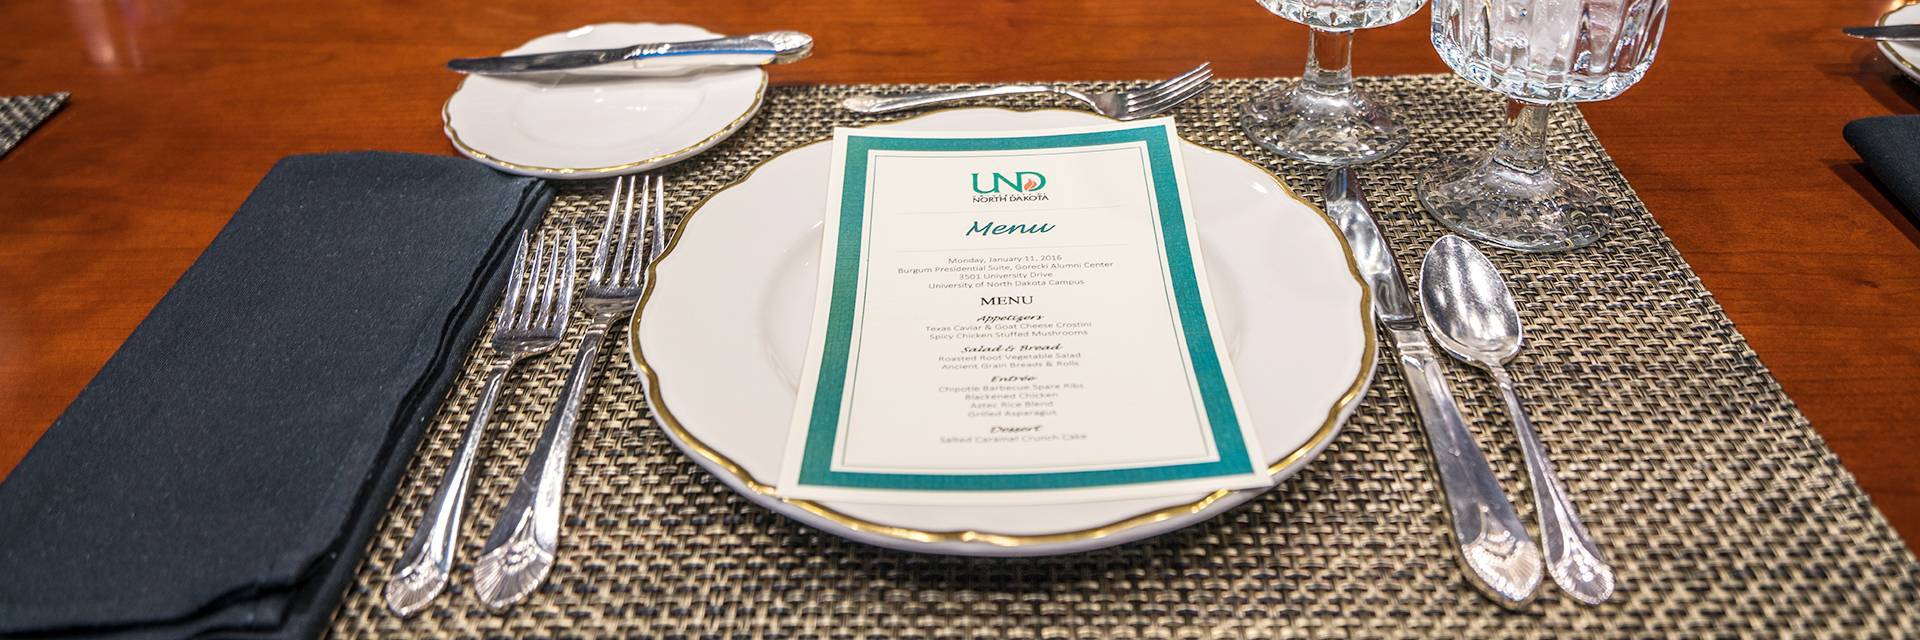 set formal plate with UND menu